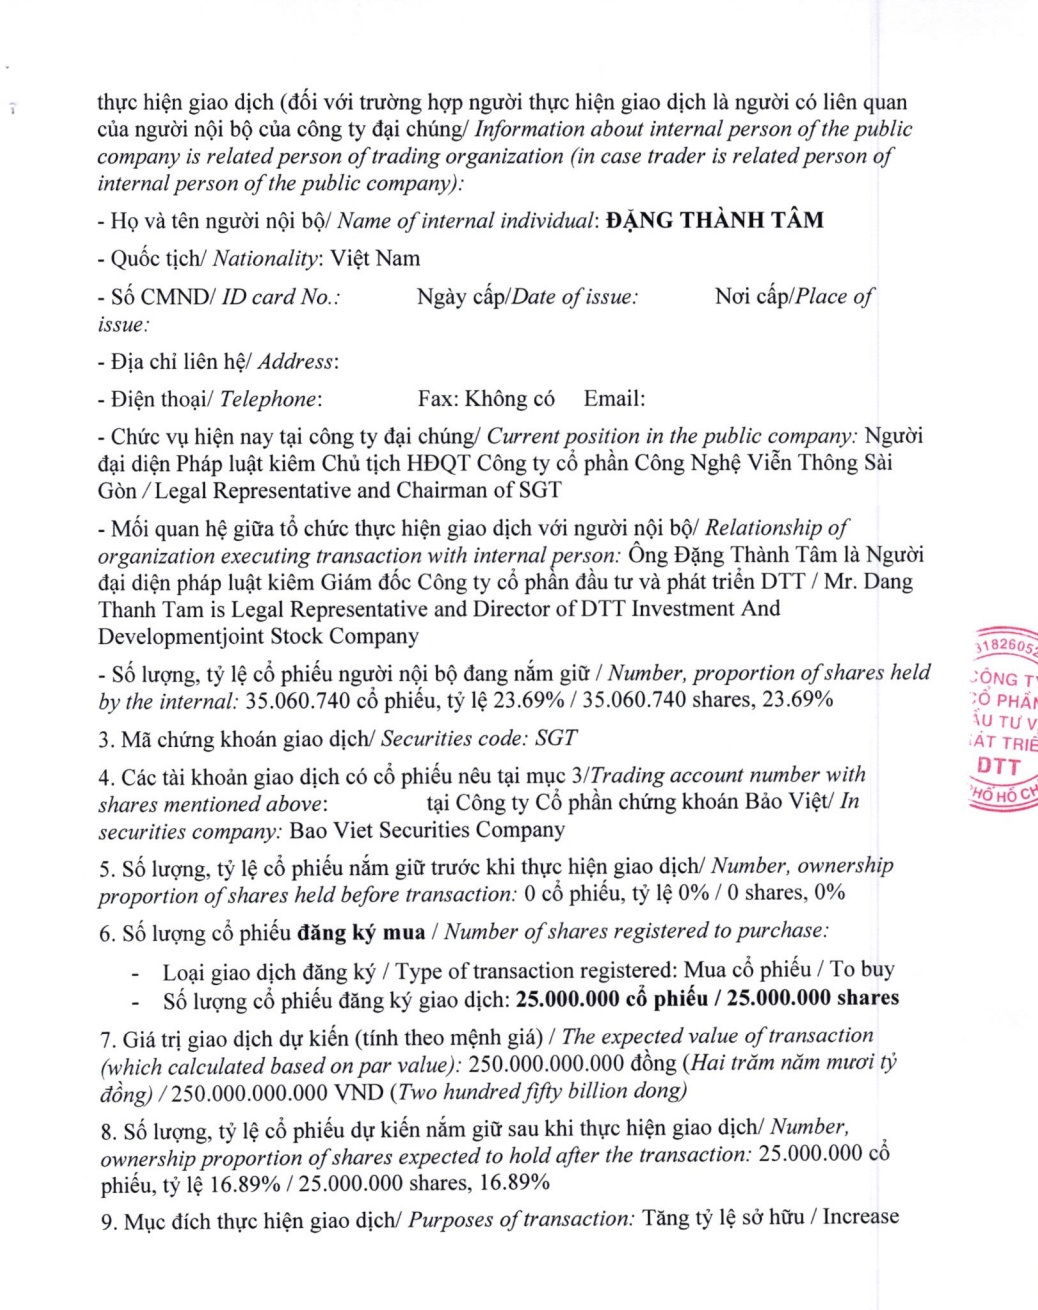 Ông Đặng Thành Tâm muốn sang tay 25 triệu cp SGT cho công ty liên quan?